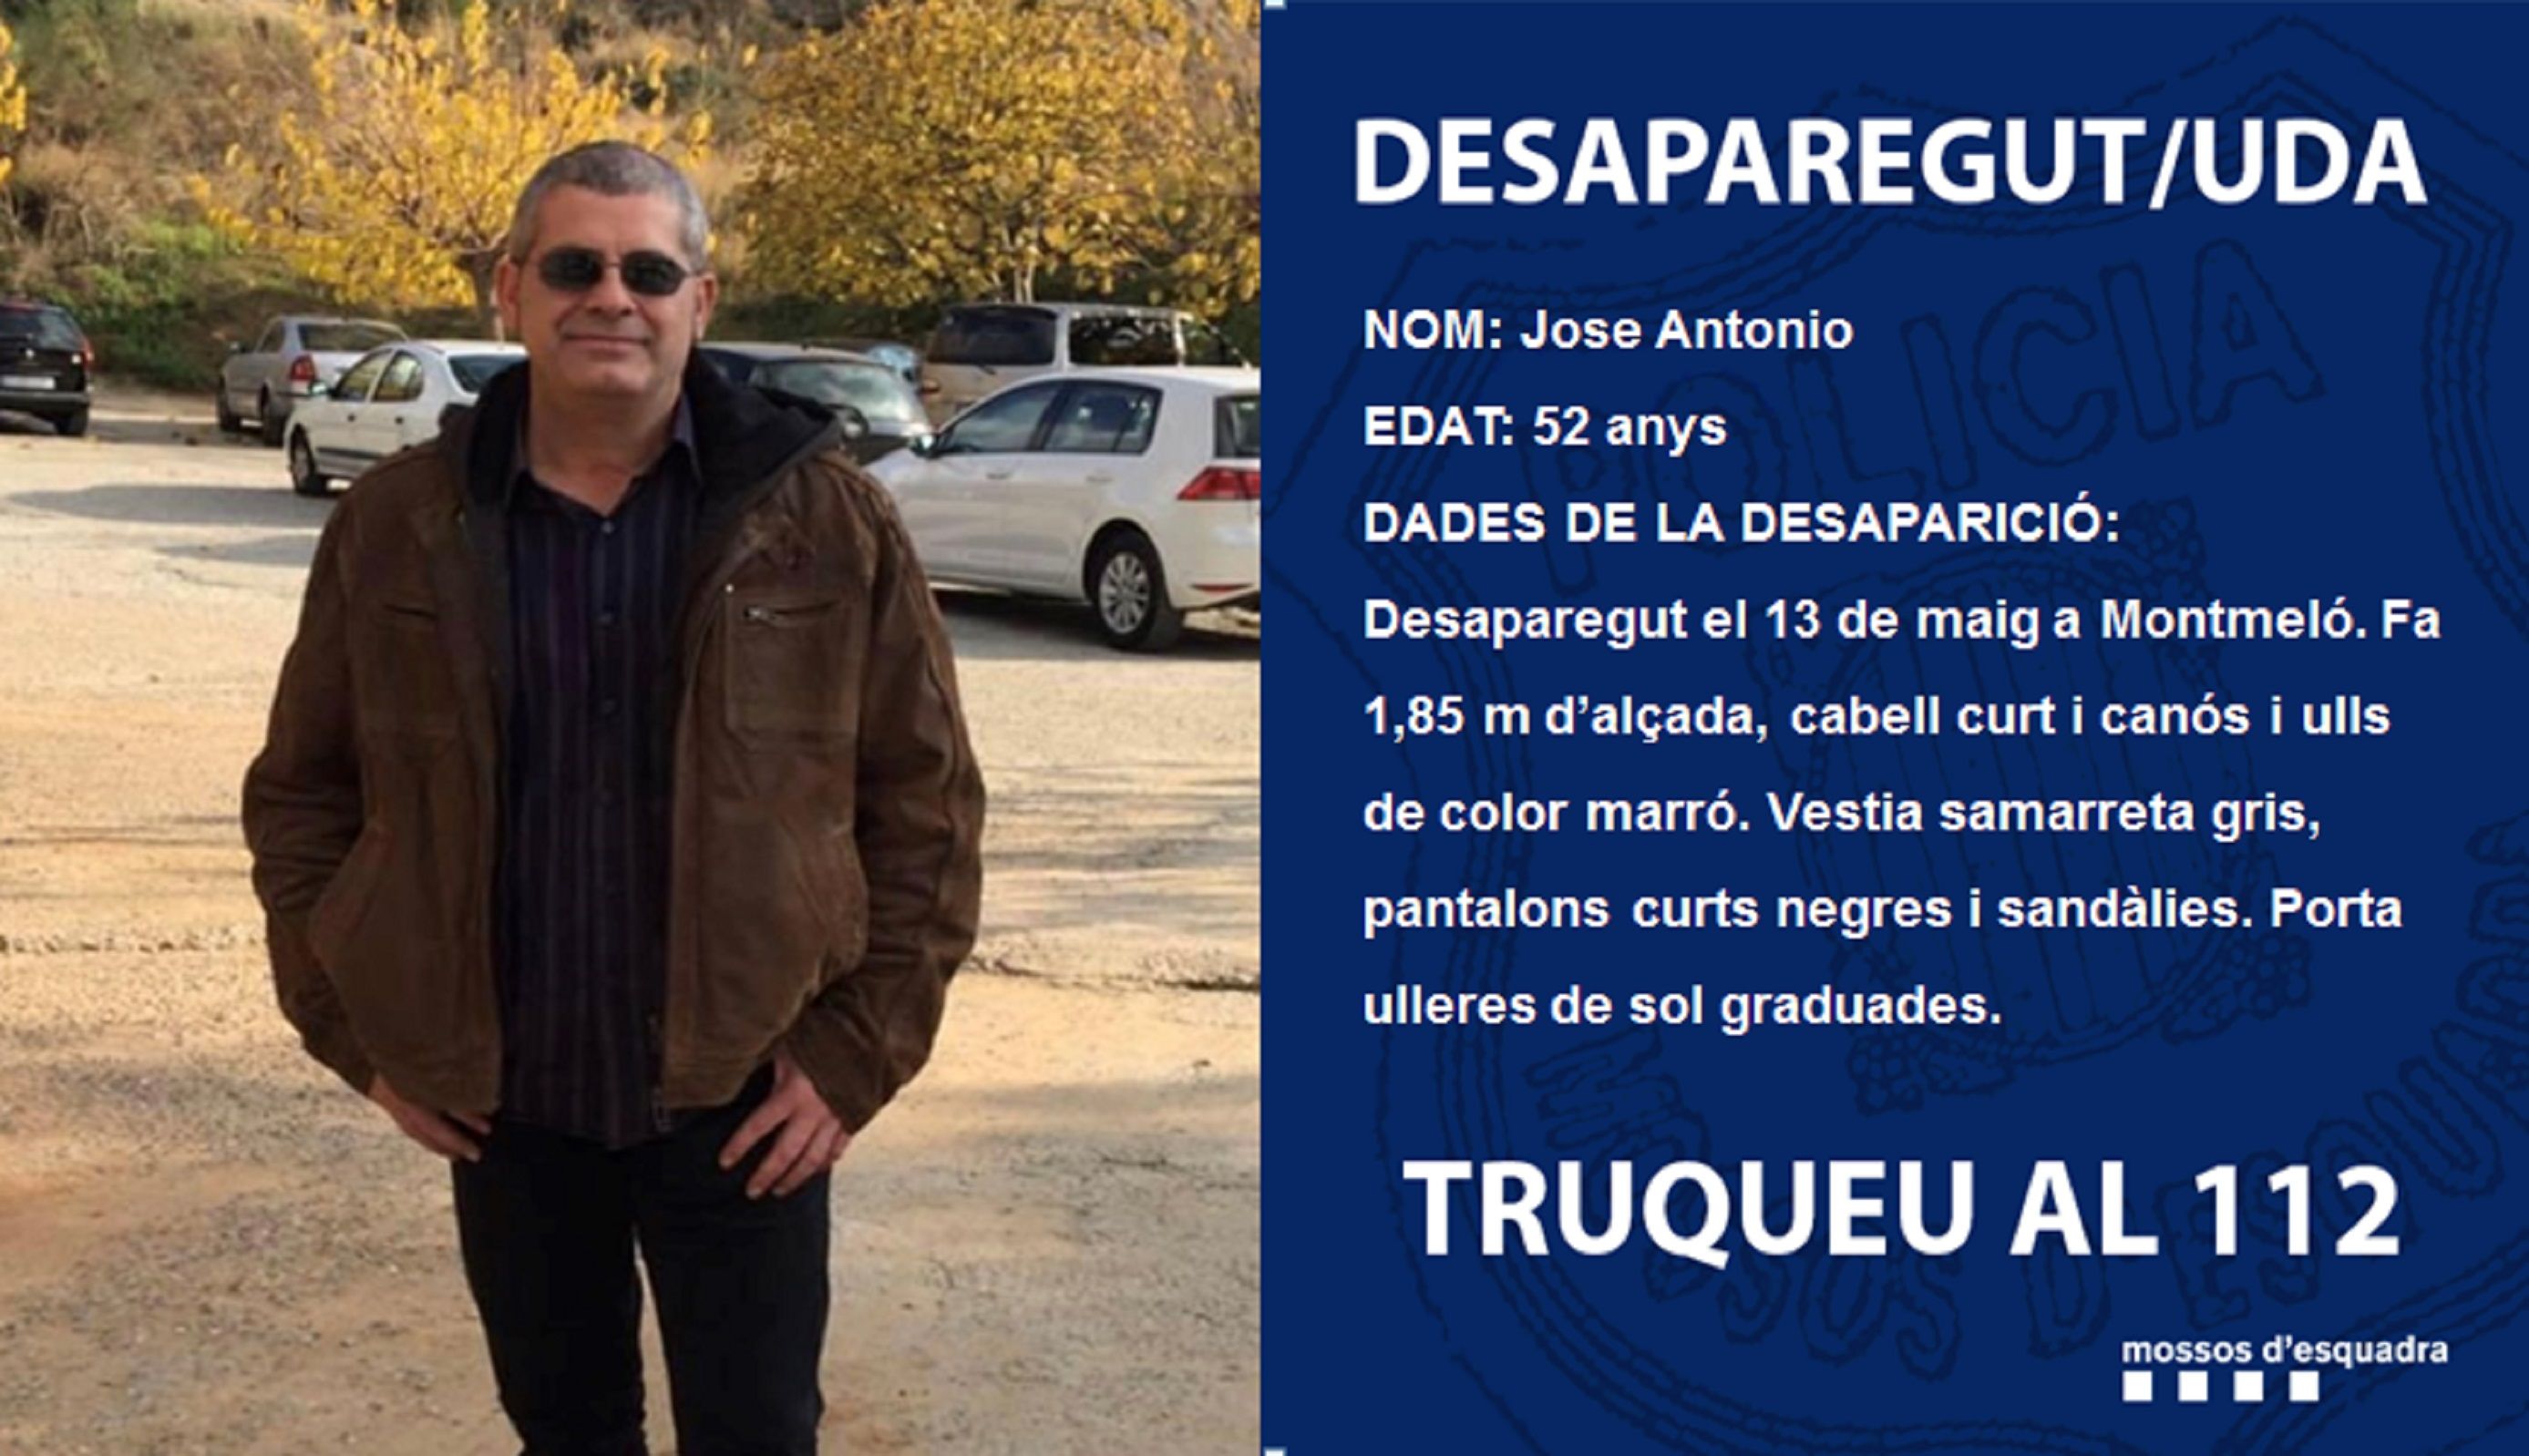 Jose Antonio desaparecido / Mossos